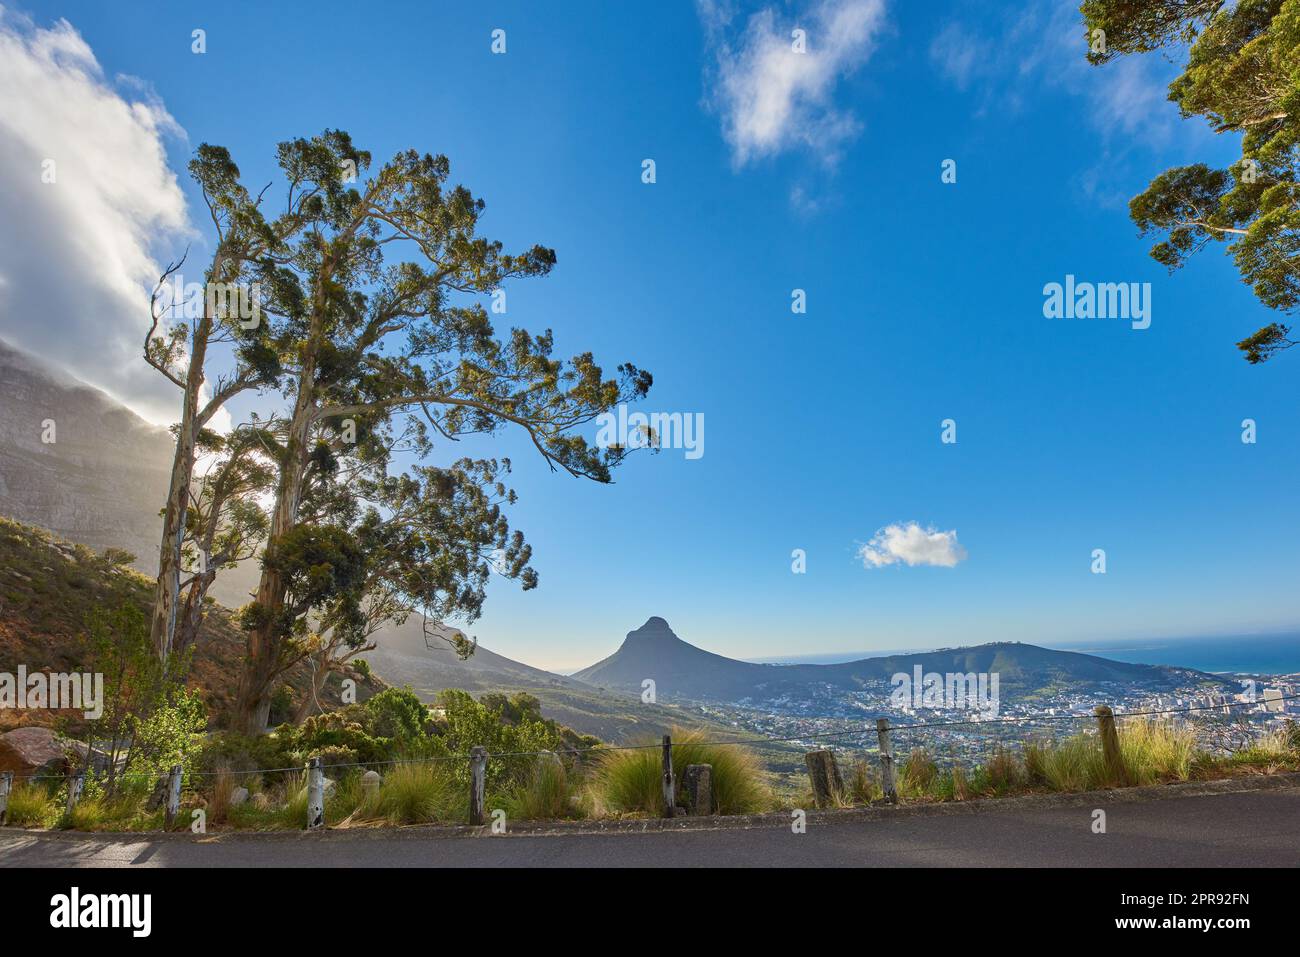 Straße oder Straße mit malerischem Bergblick und blauem Himmel während einer Sommerreise in Kapstadt, Südafrika. Landschaft mit üppigen grünen Hügeln und einem Bergpass für Wochenendausflüge und Fahrten Stockfoto